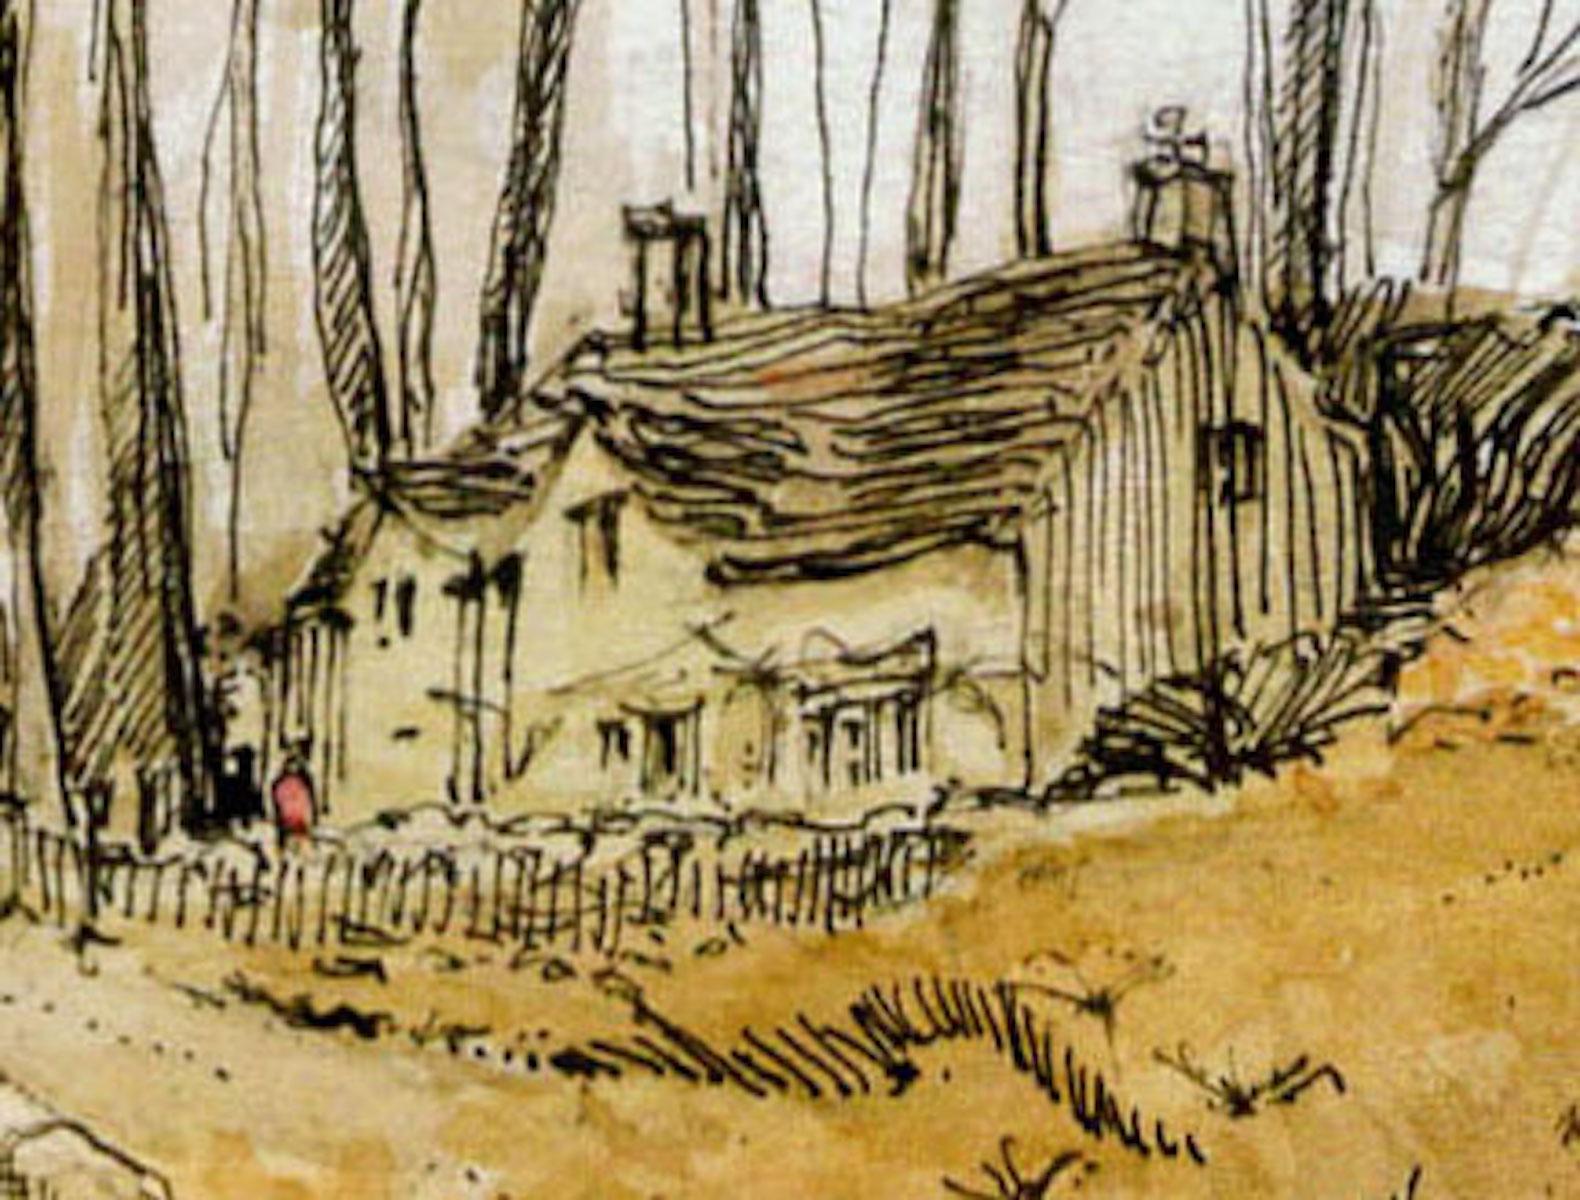 Cottage à Notgrove, Gloucestershire, par Elizabeth Chalmers [2022].
original et signé à la main par l'artiste 
Plume et encre avec aquarelle
Taille de l'image : H:33.5cm cm x L:26.0cm cm
Taille complète de l'œuvre non encadrée : H:33,5cm cm x L:26,0